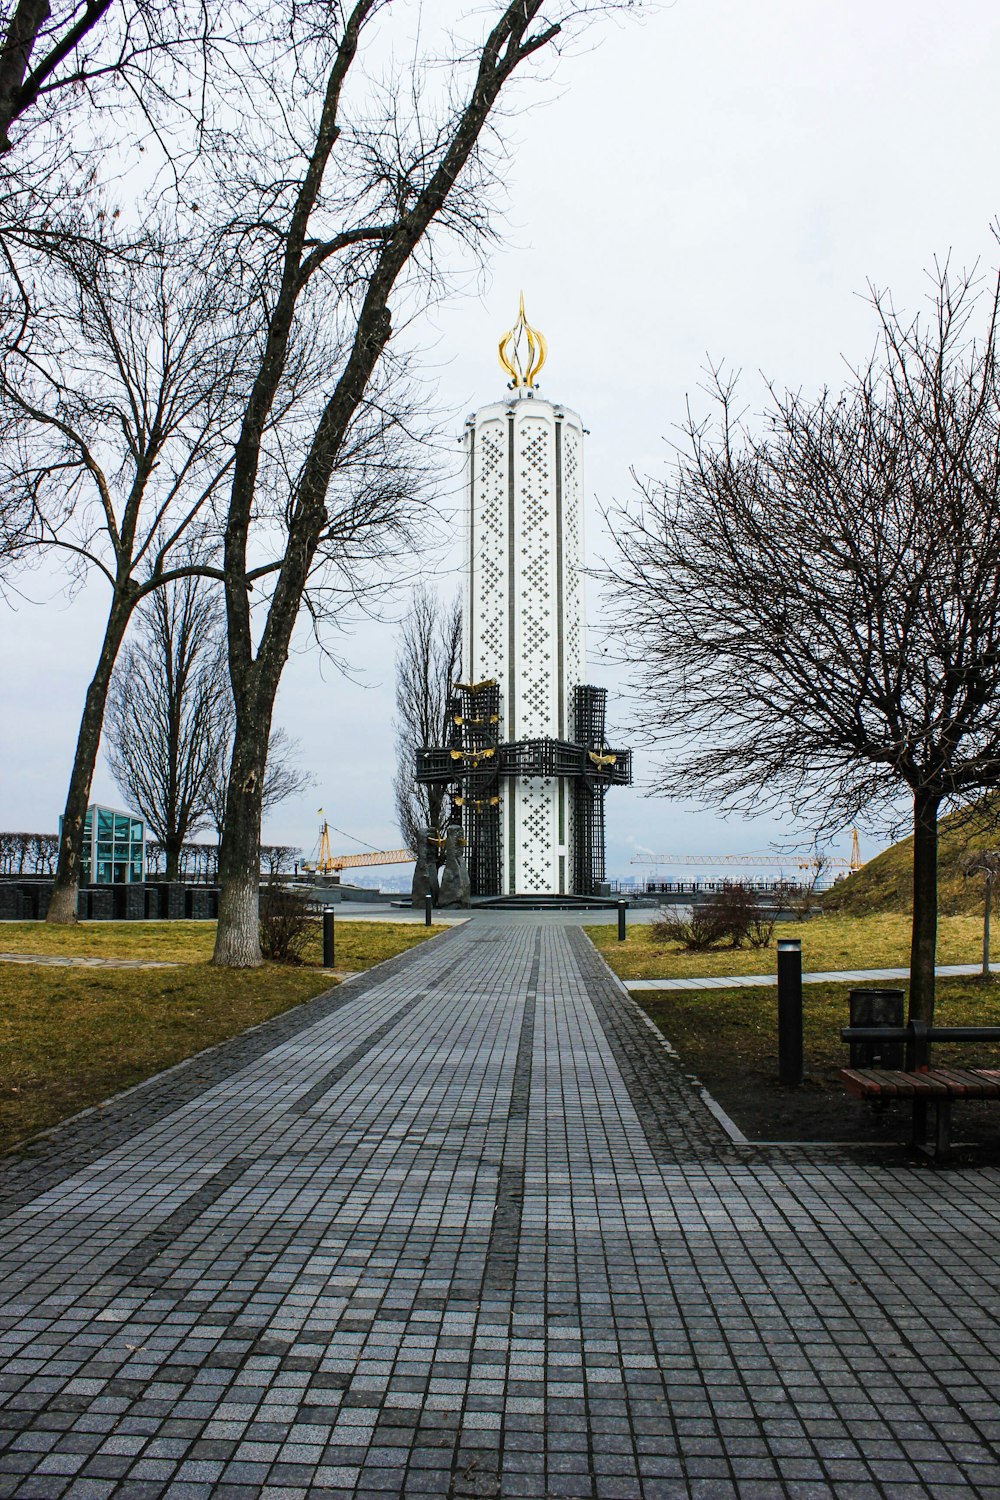 Una torre del reloj en medio de un parque